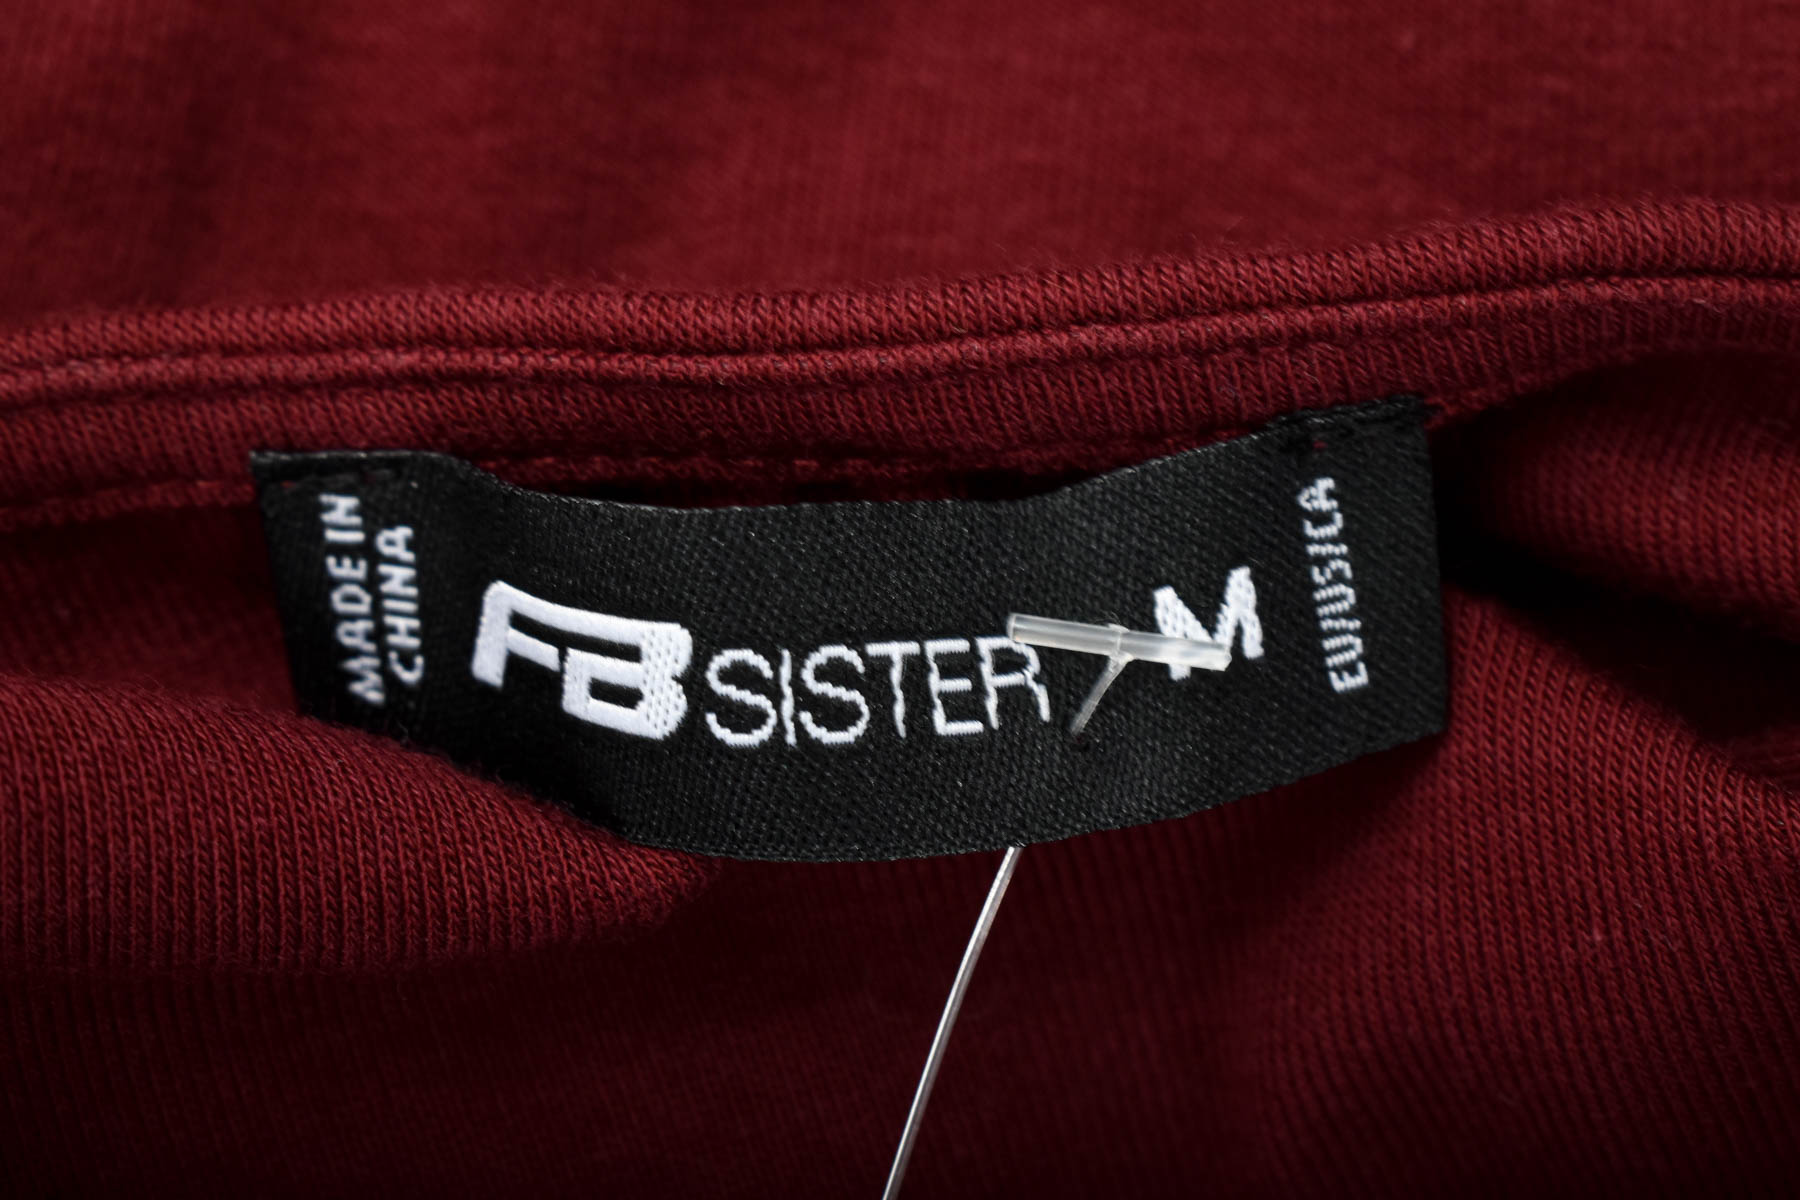 Γυναικεία μπλούζα - FB Sister - 2